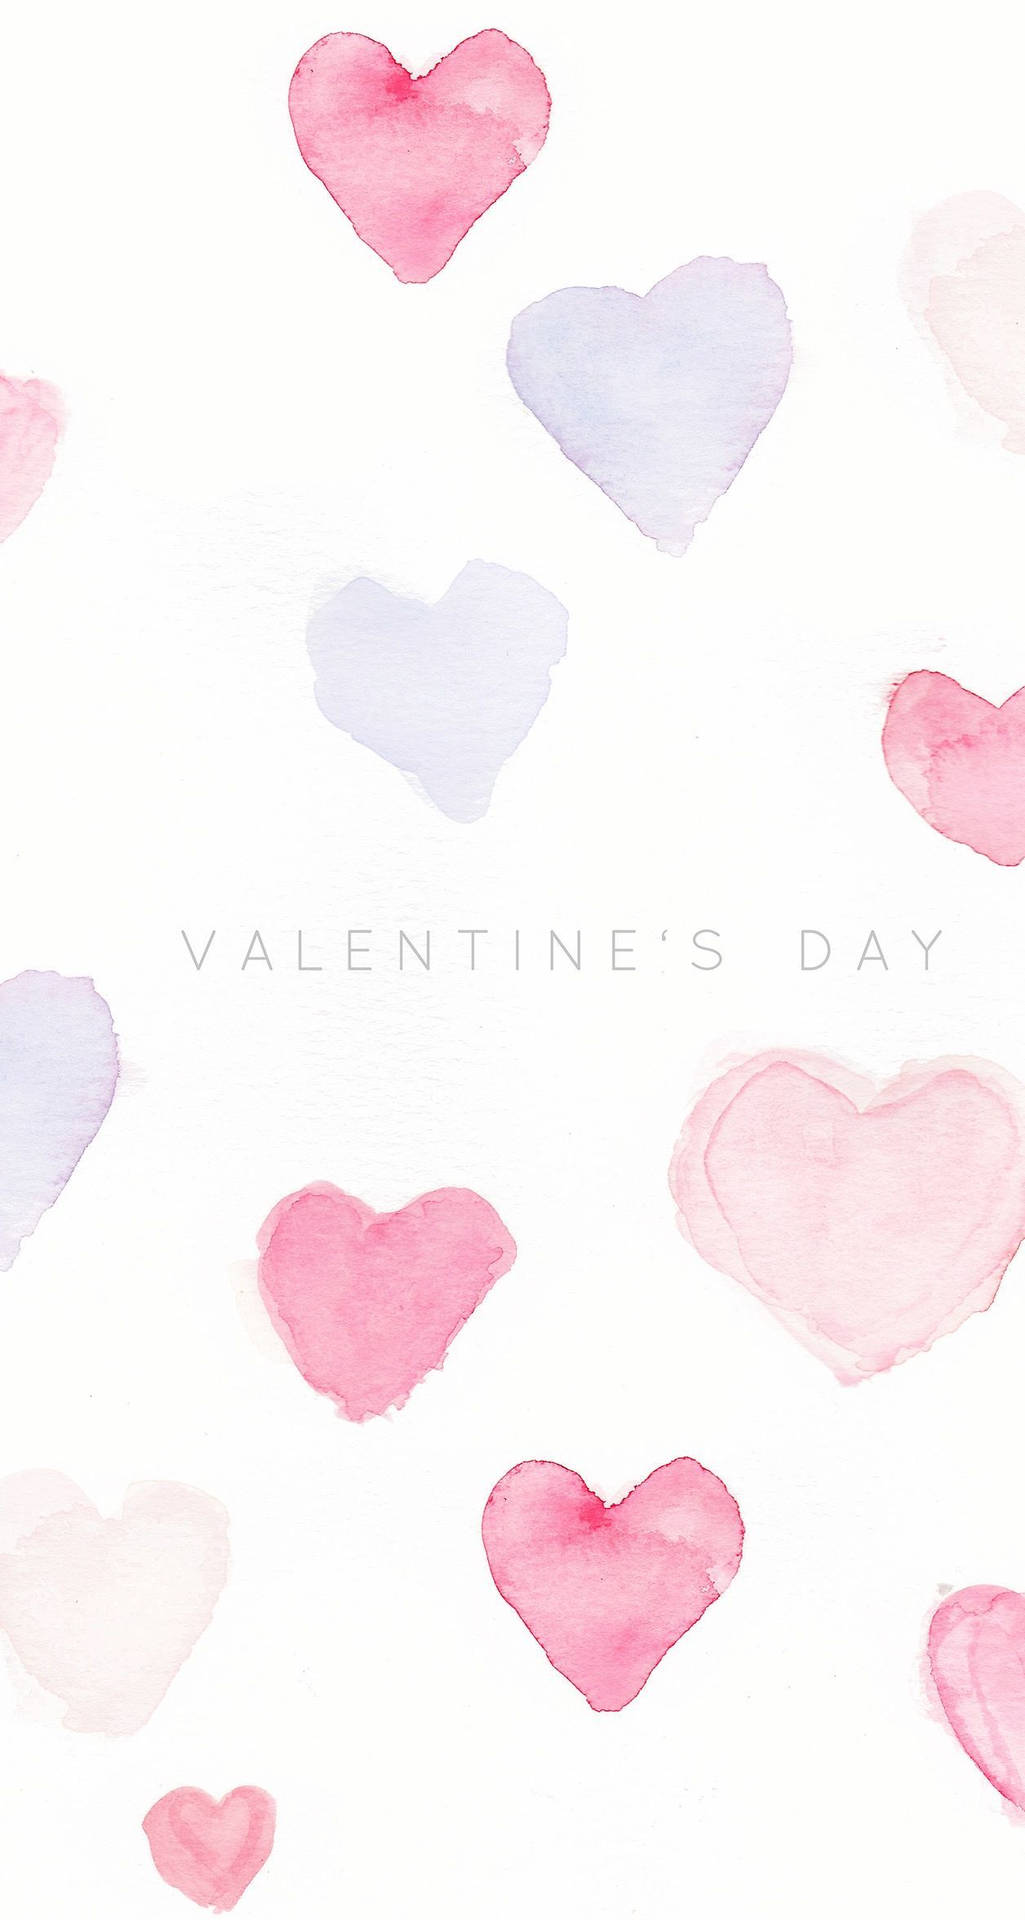 Fejre kærligheden denne Valentins Dag med denne søde illustration Wallpaper